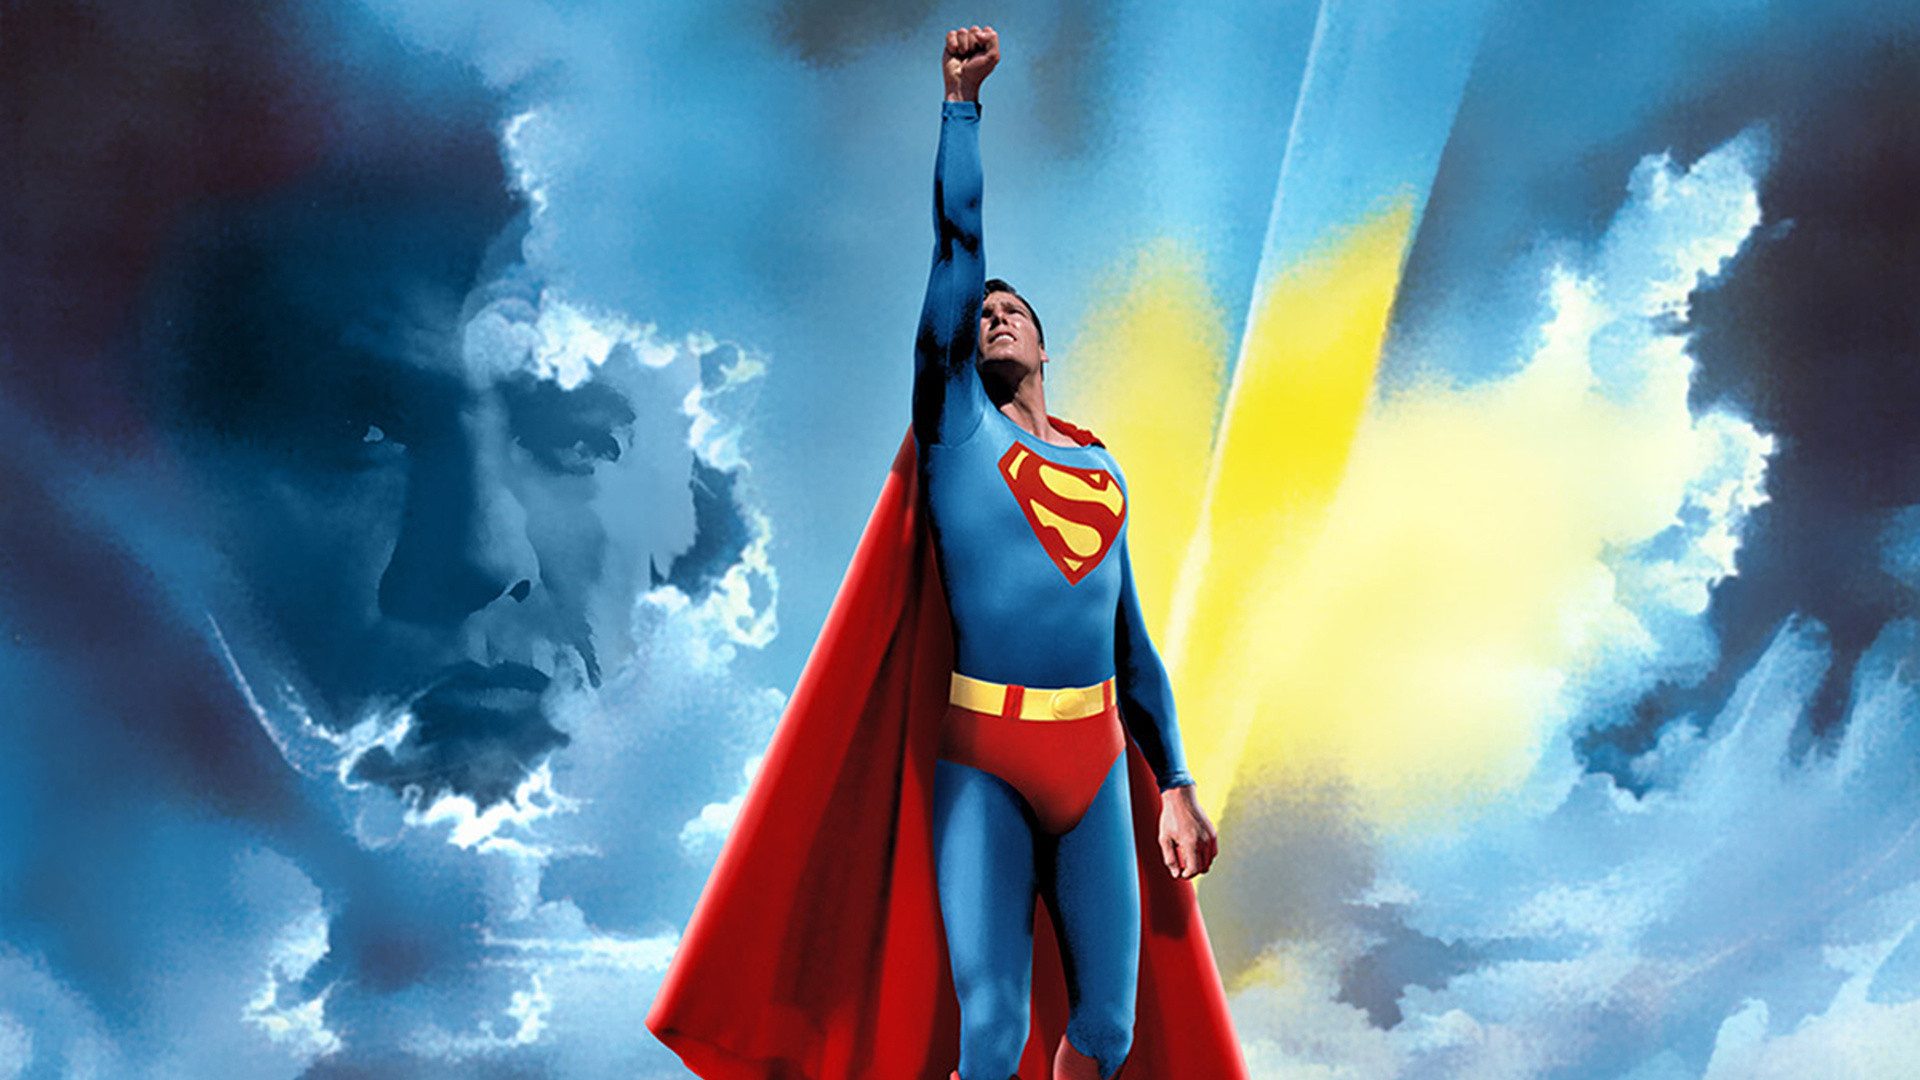 fond d'écran superman,superman,super héros,personnage fictif,ligue de justice,héros